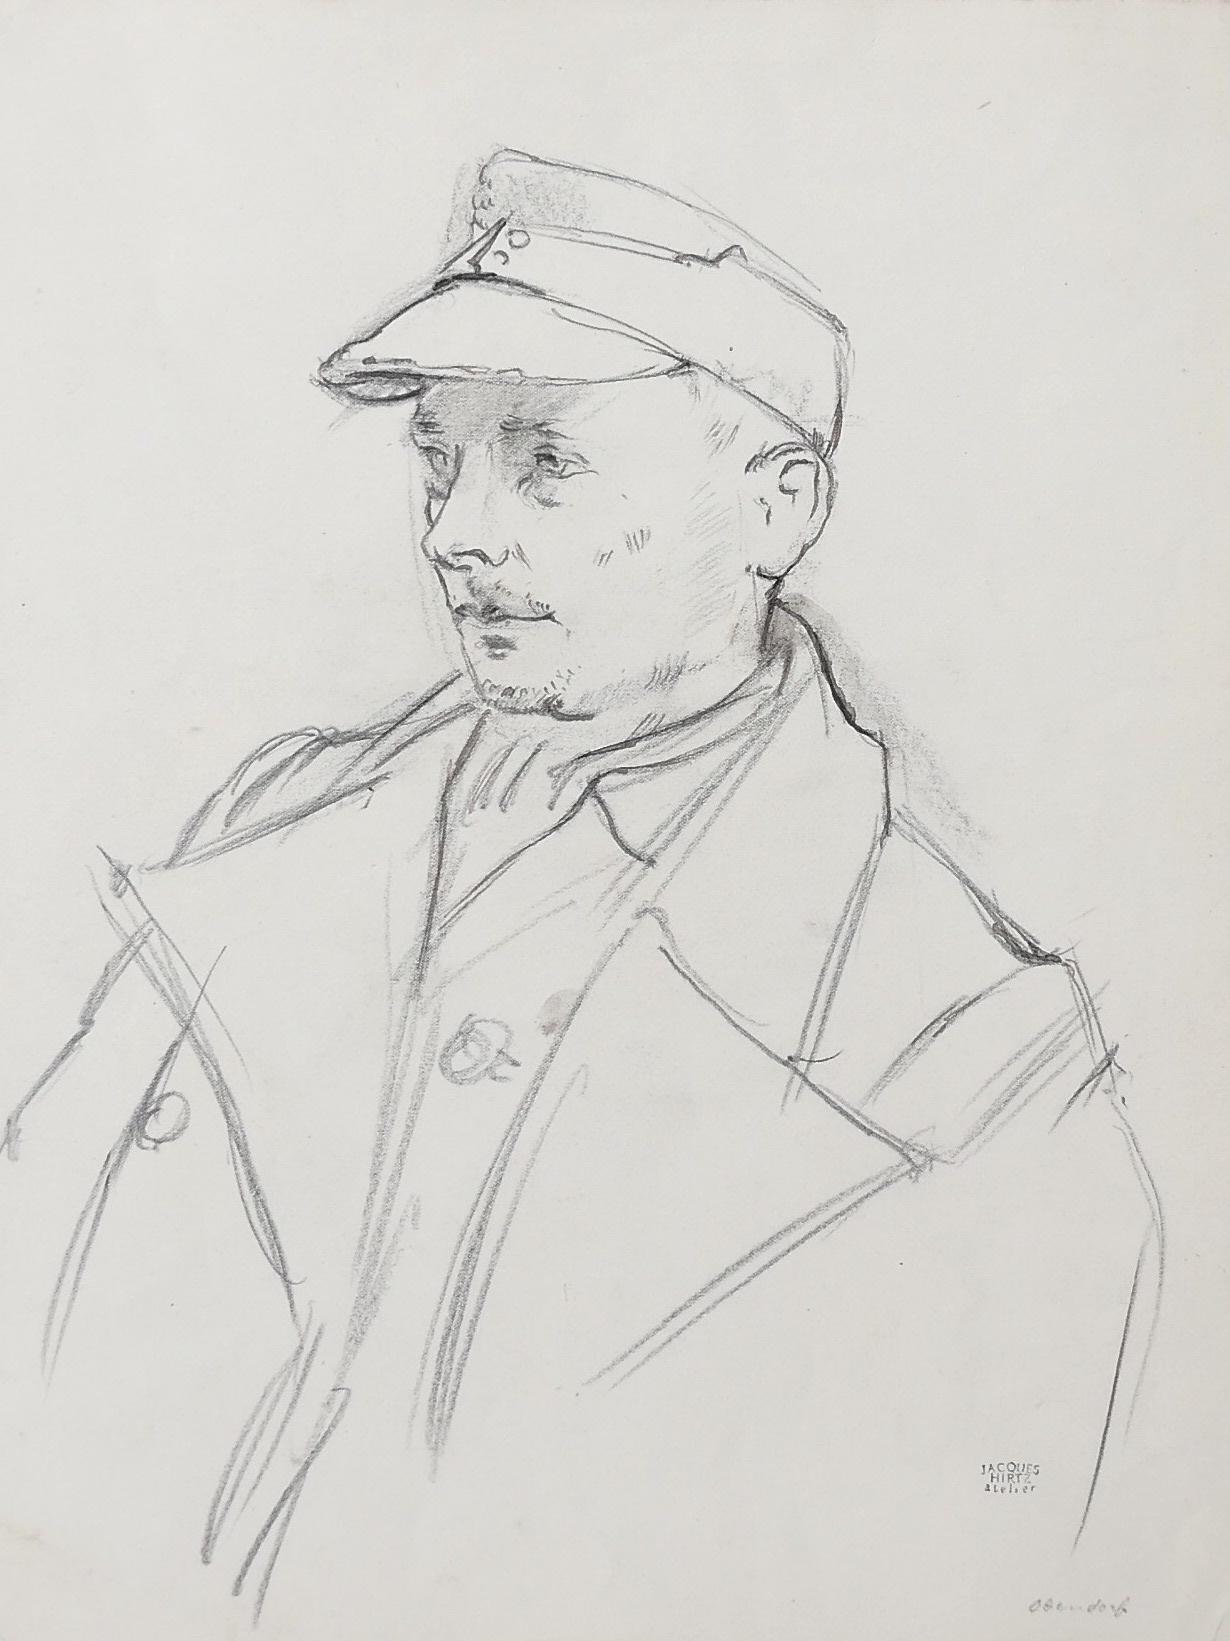 Figurative Art Jacques Hirtz - Soldier - Dessin au crayon de J. Hirtz - Milieu du XXe siècle